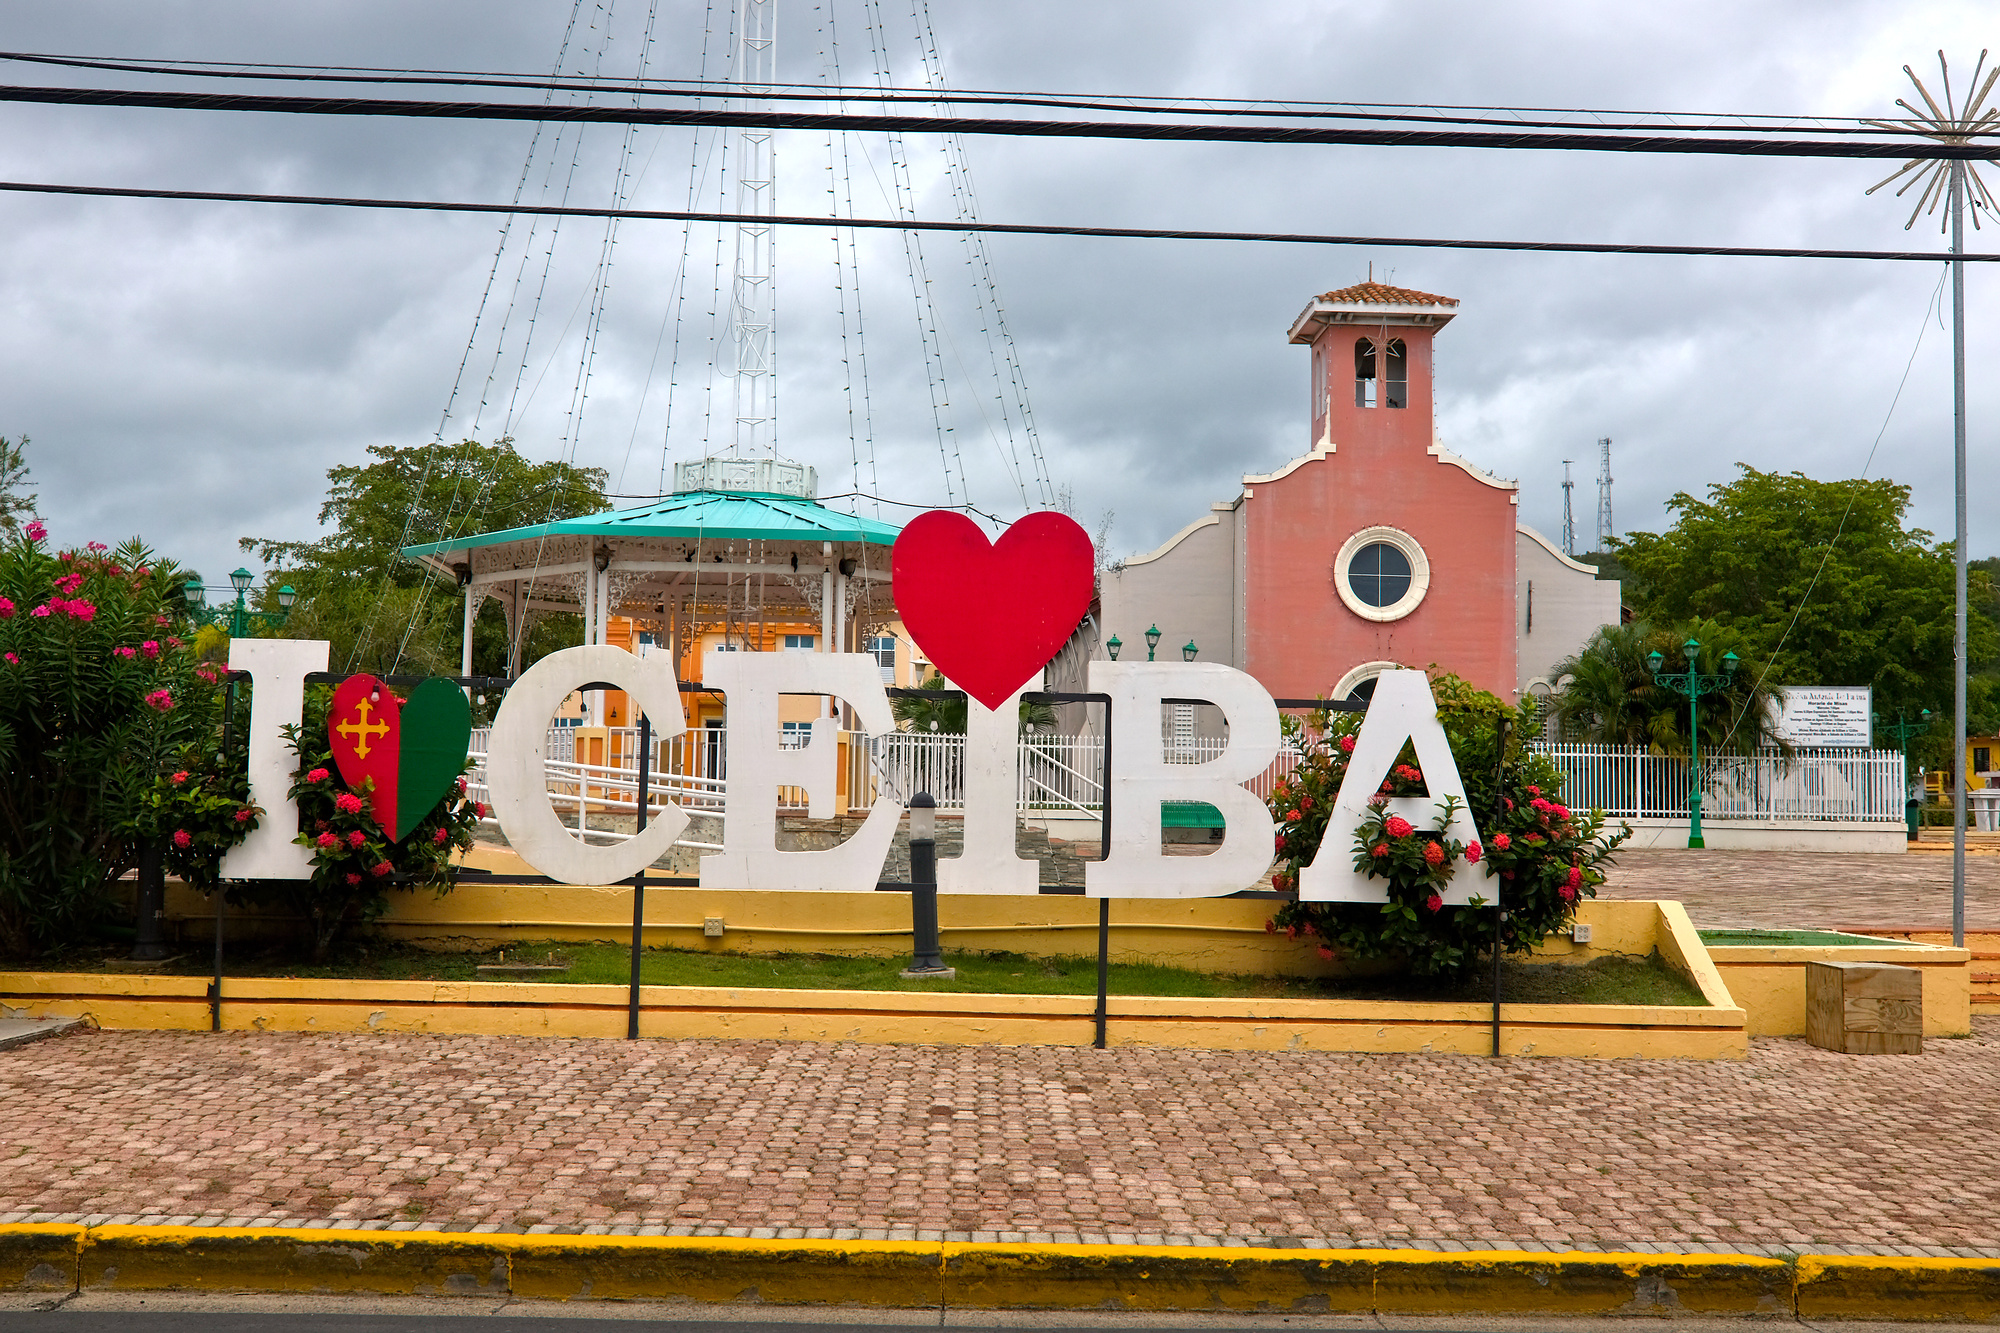 An I Heart Ceiba sign